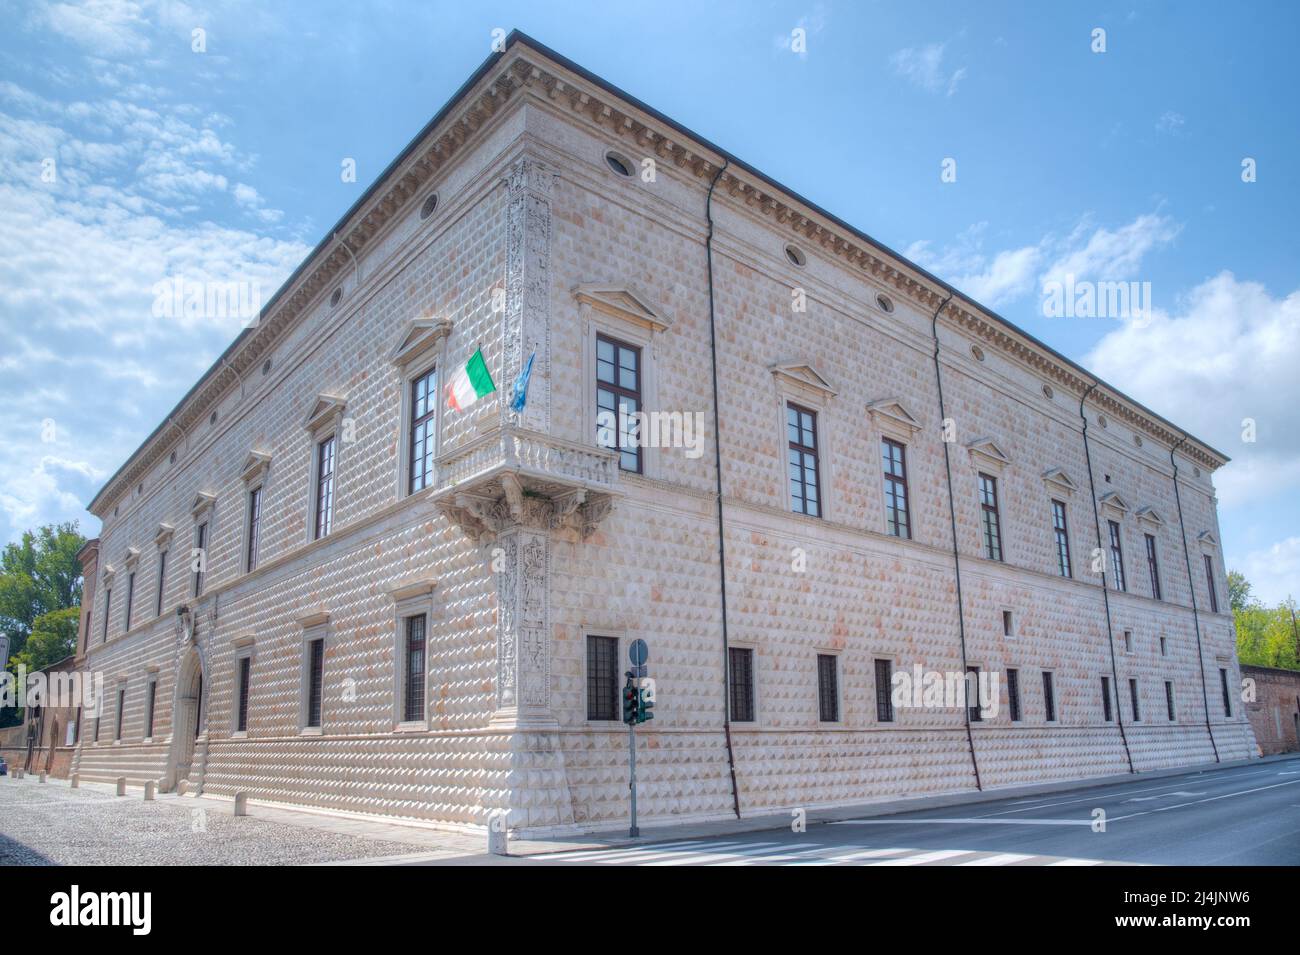 Palazzo dei Diamanti nel comune italiano di Ferrara. Foto Stock